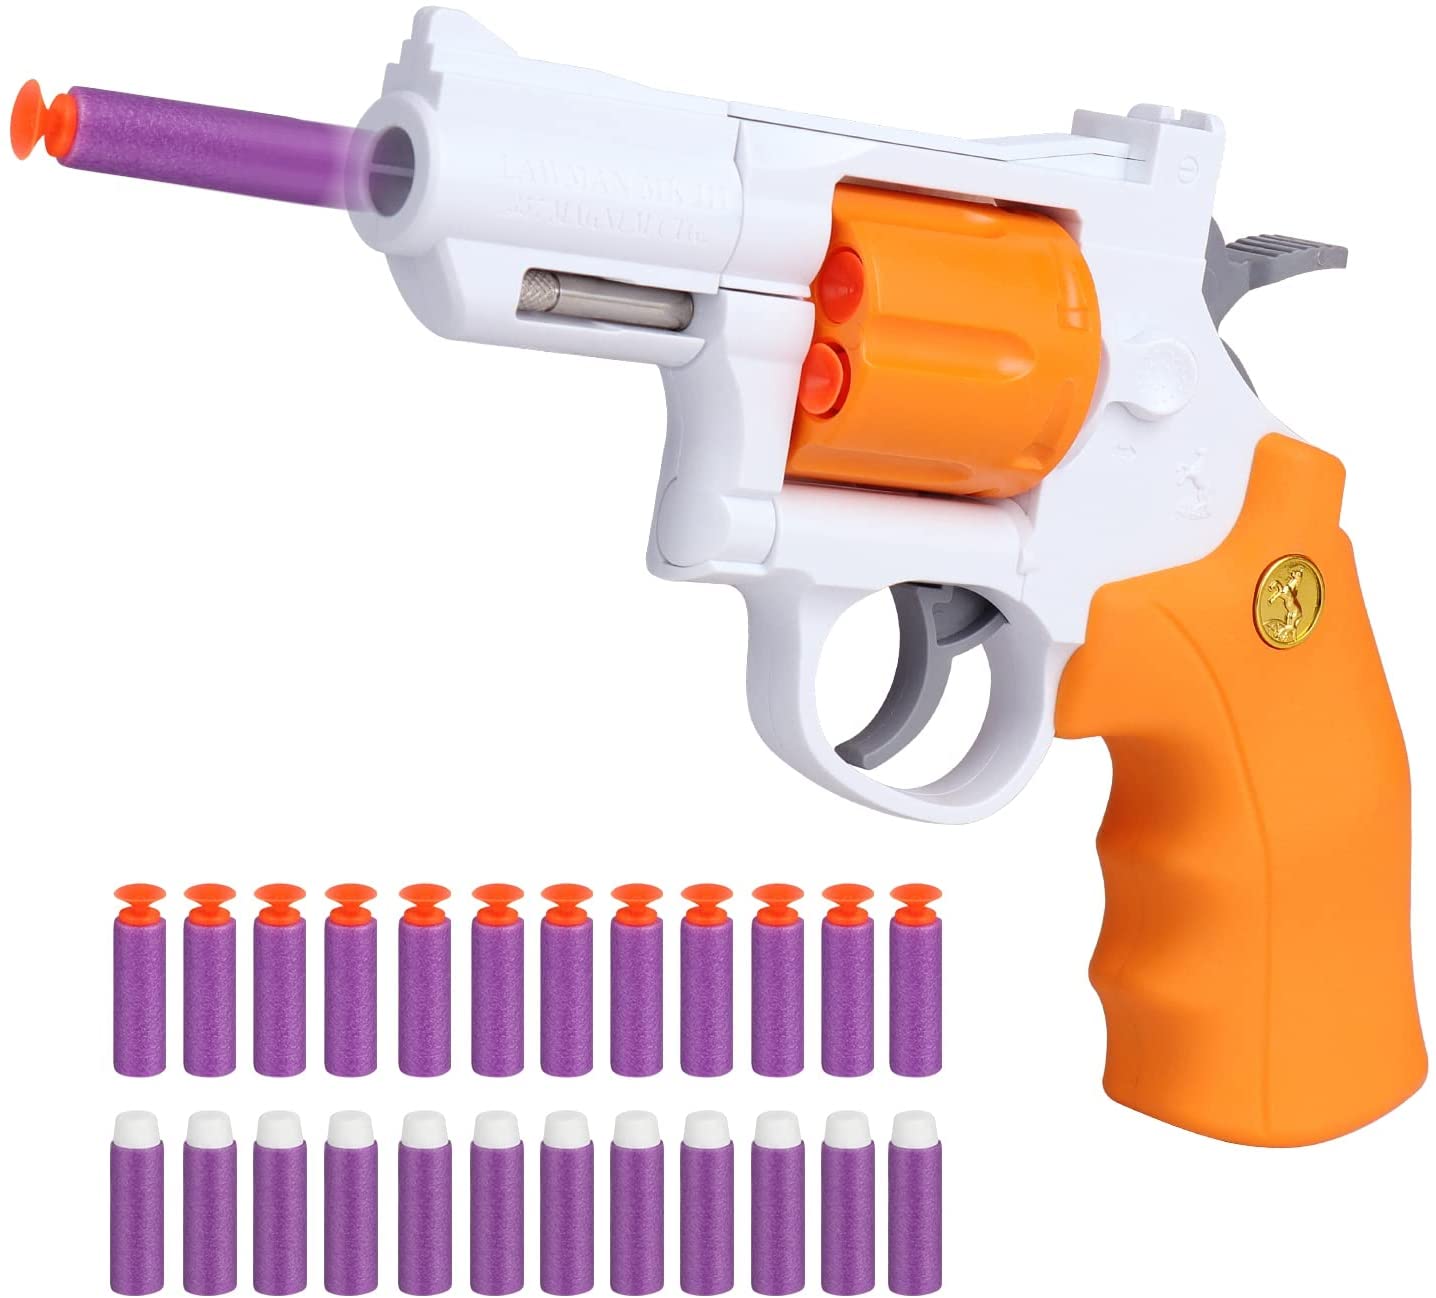 Ferventoys Soft Bullet Toy Guns - Ferventoys